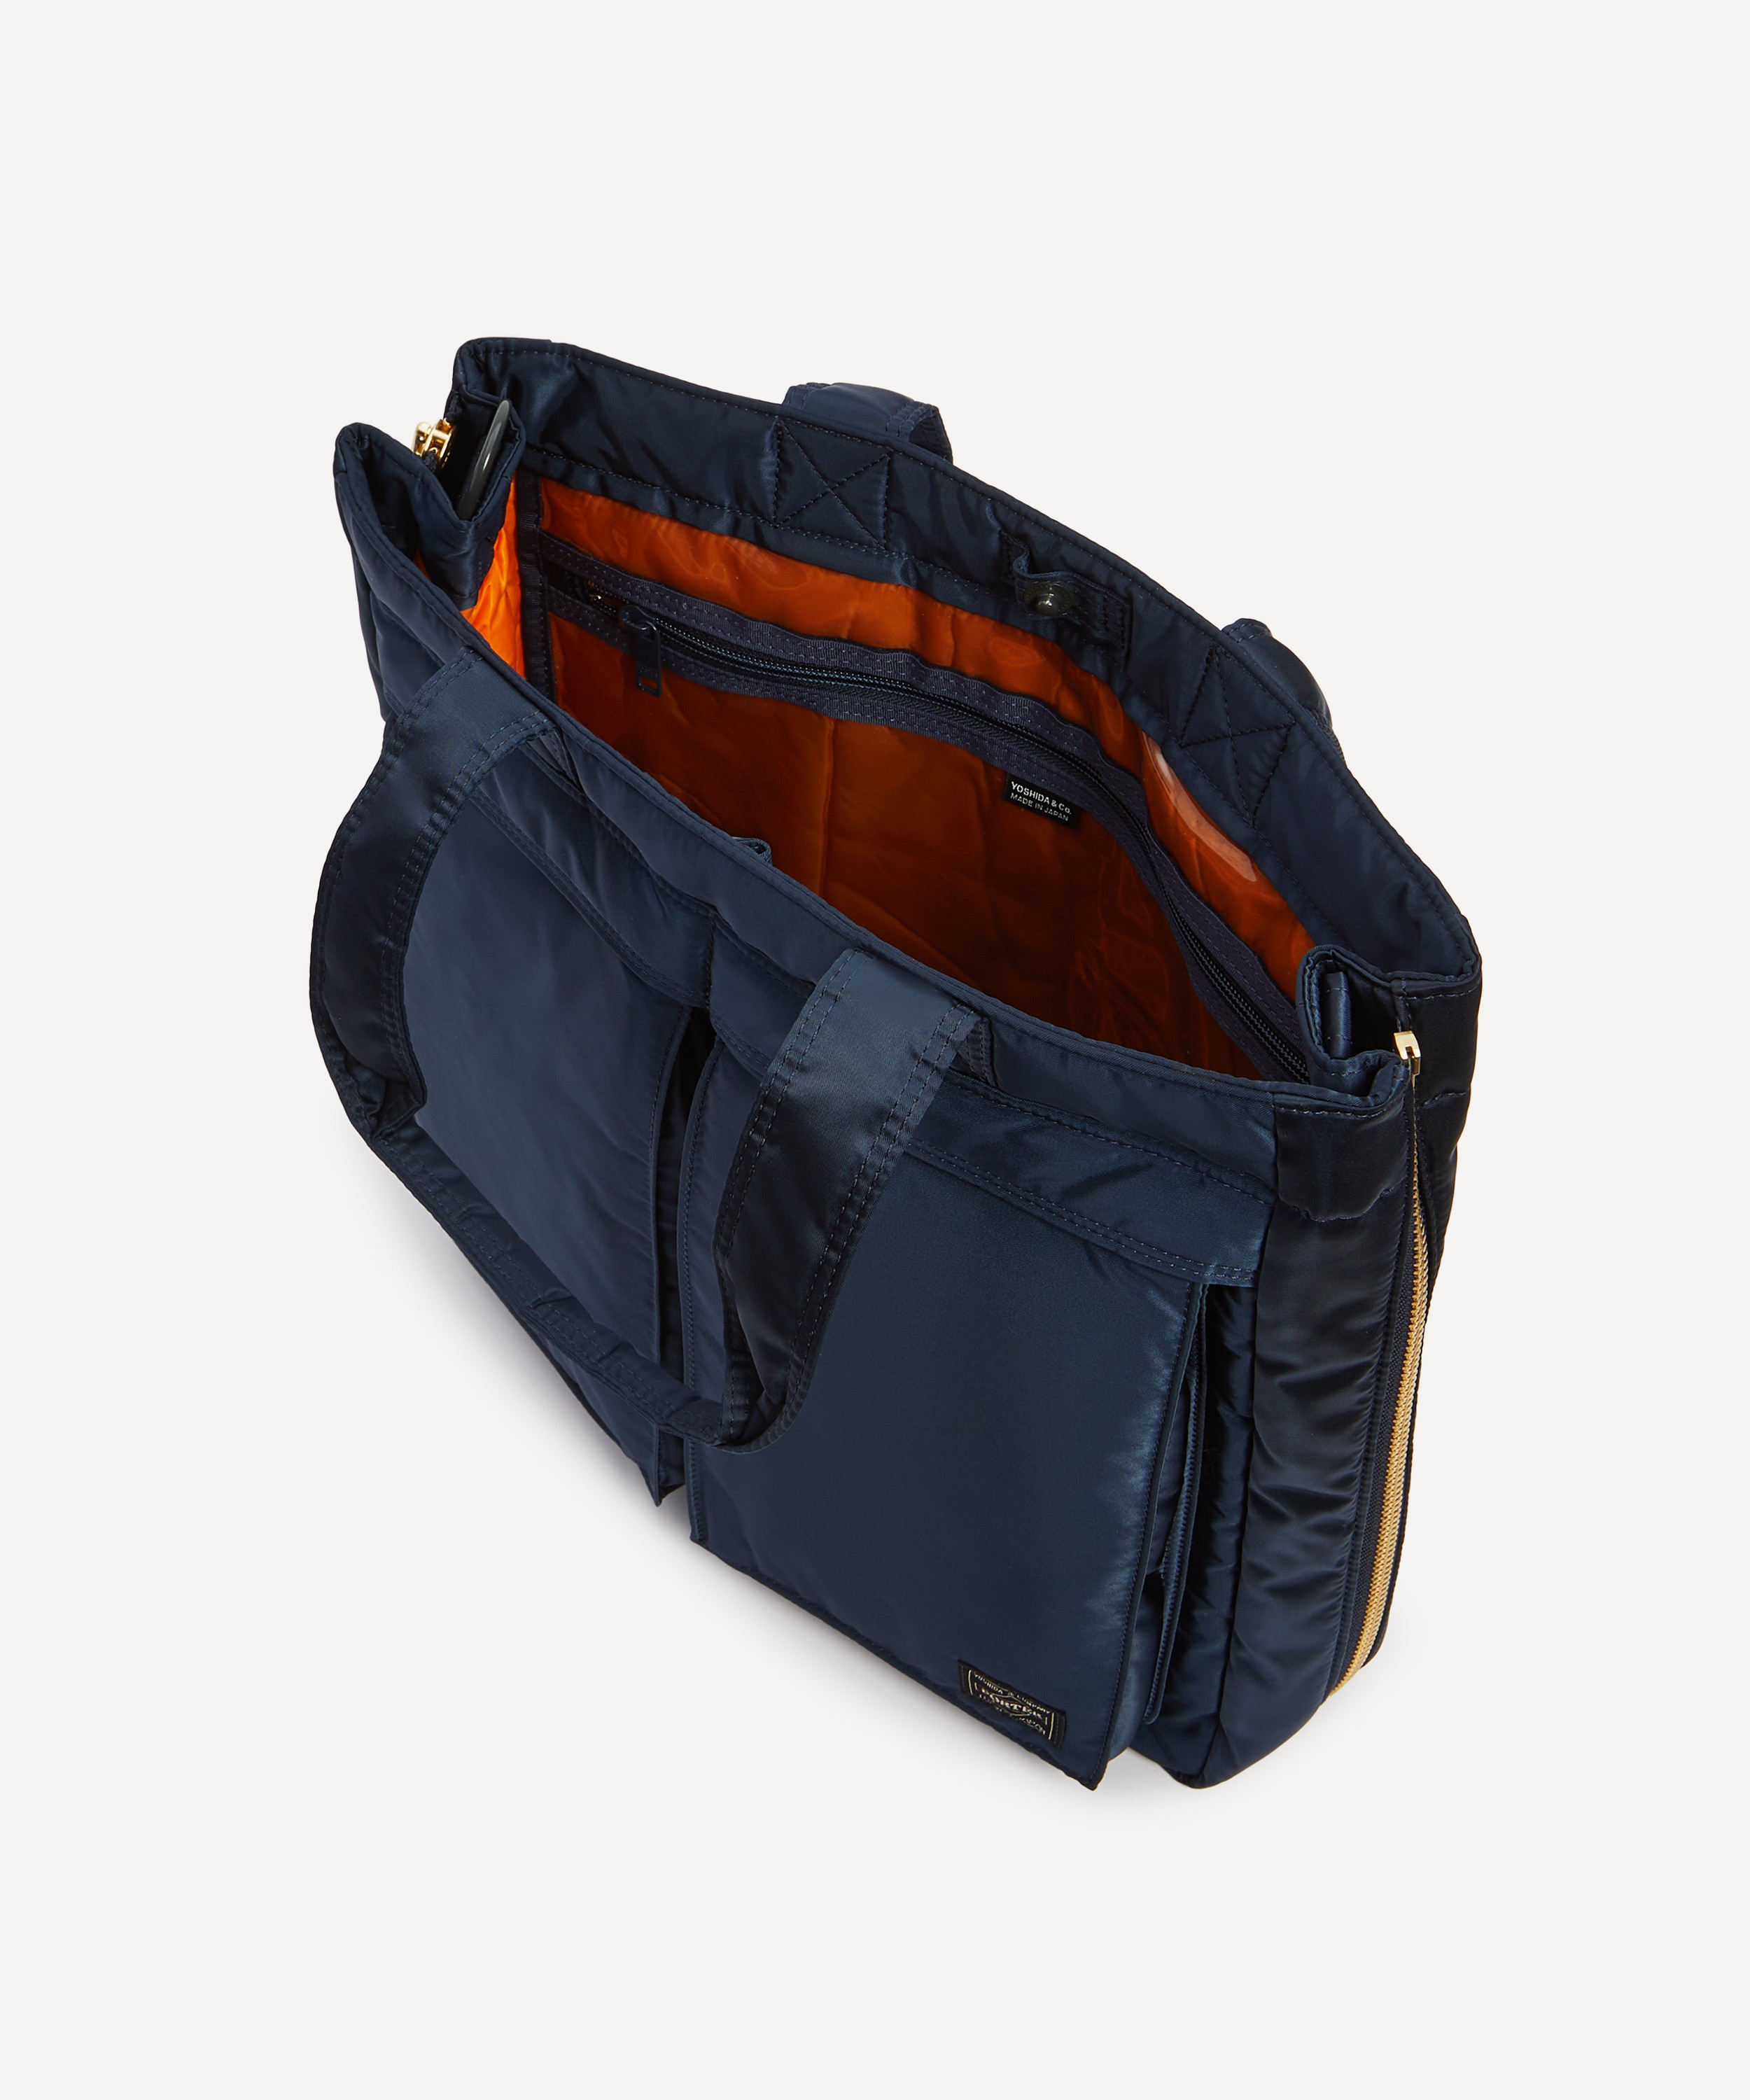 Porter-Yoshida & Co. drawstring-fastening Tote Bag - Black